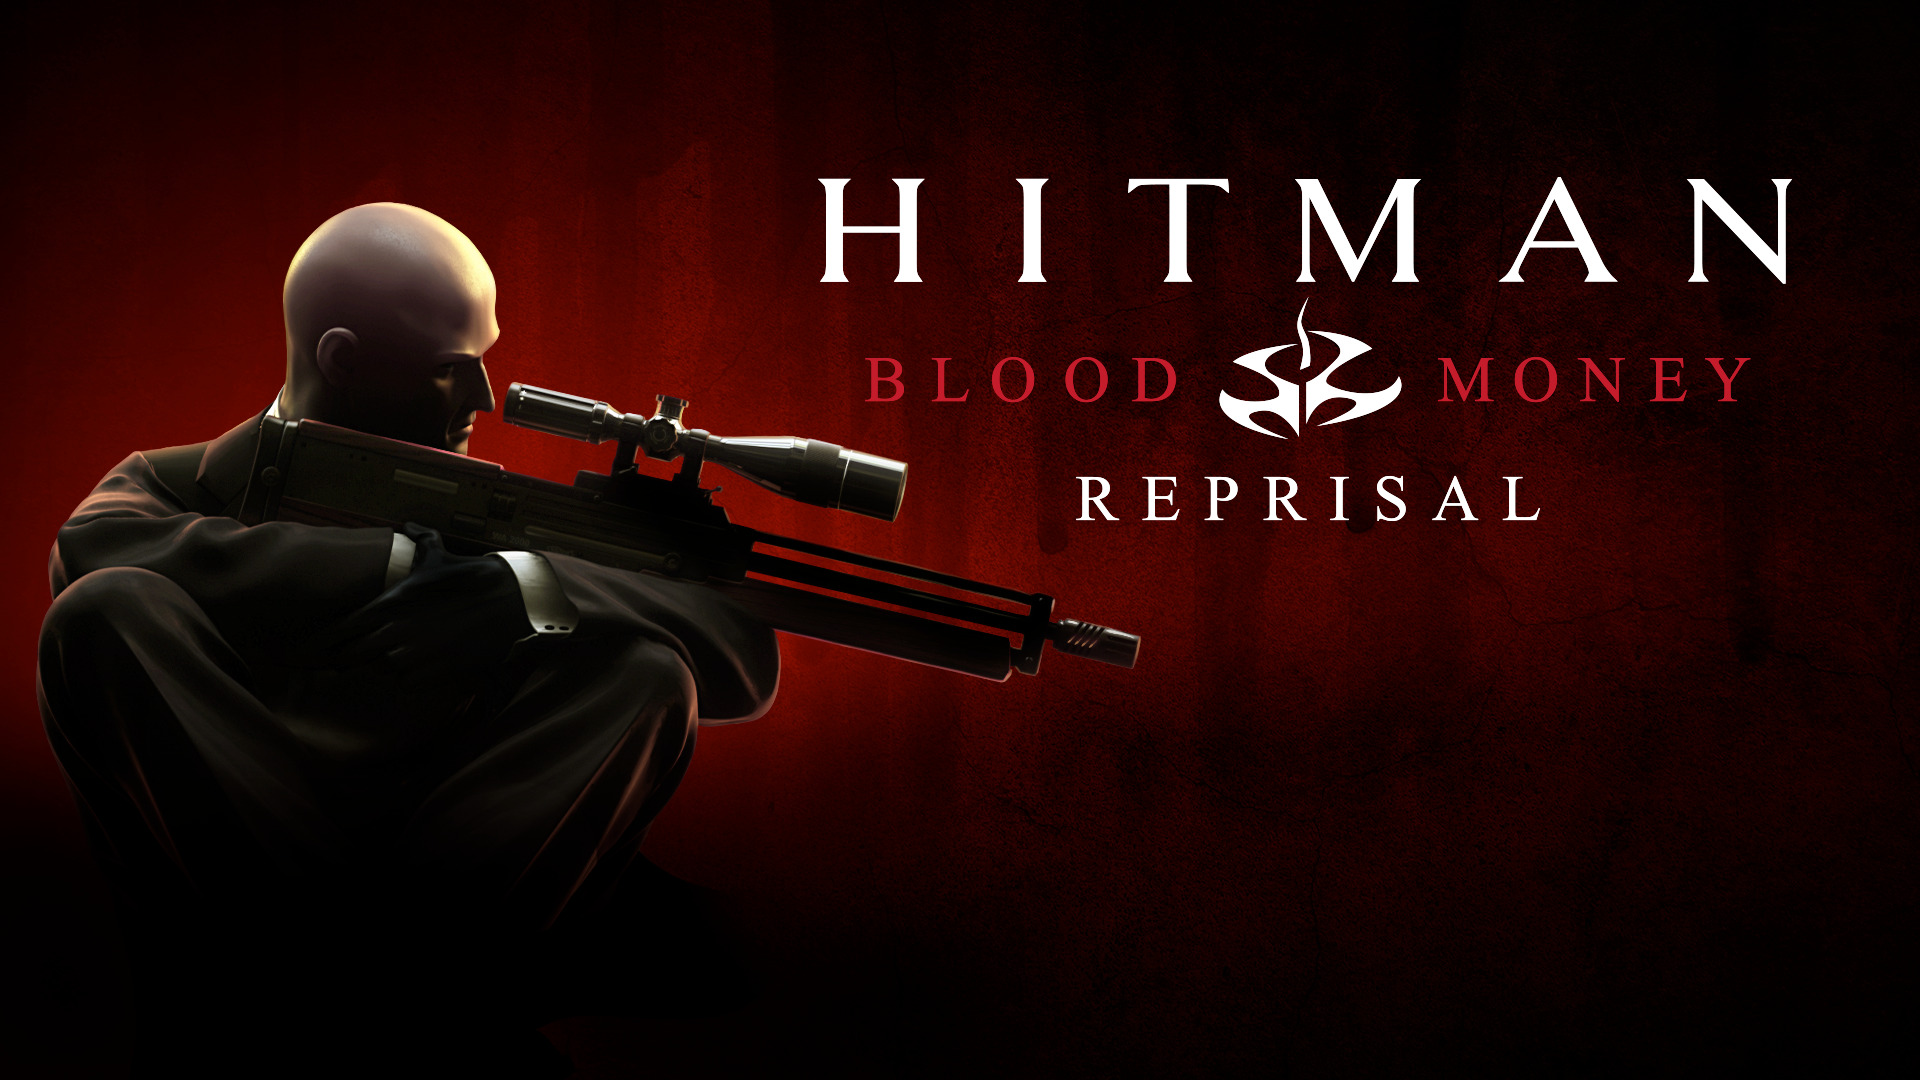 Hitman 2 - requisitos para a versão PC revelados